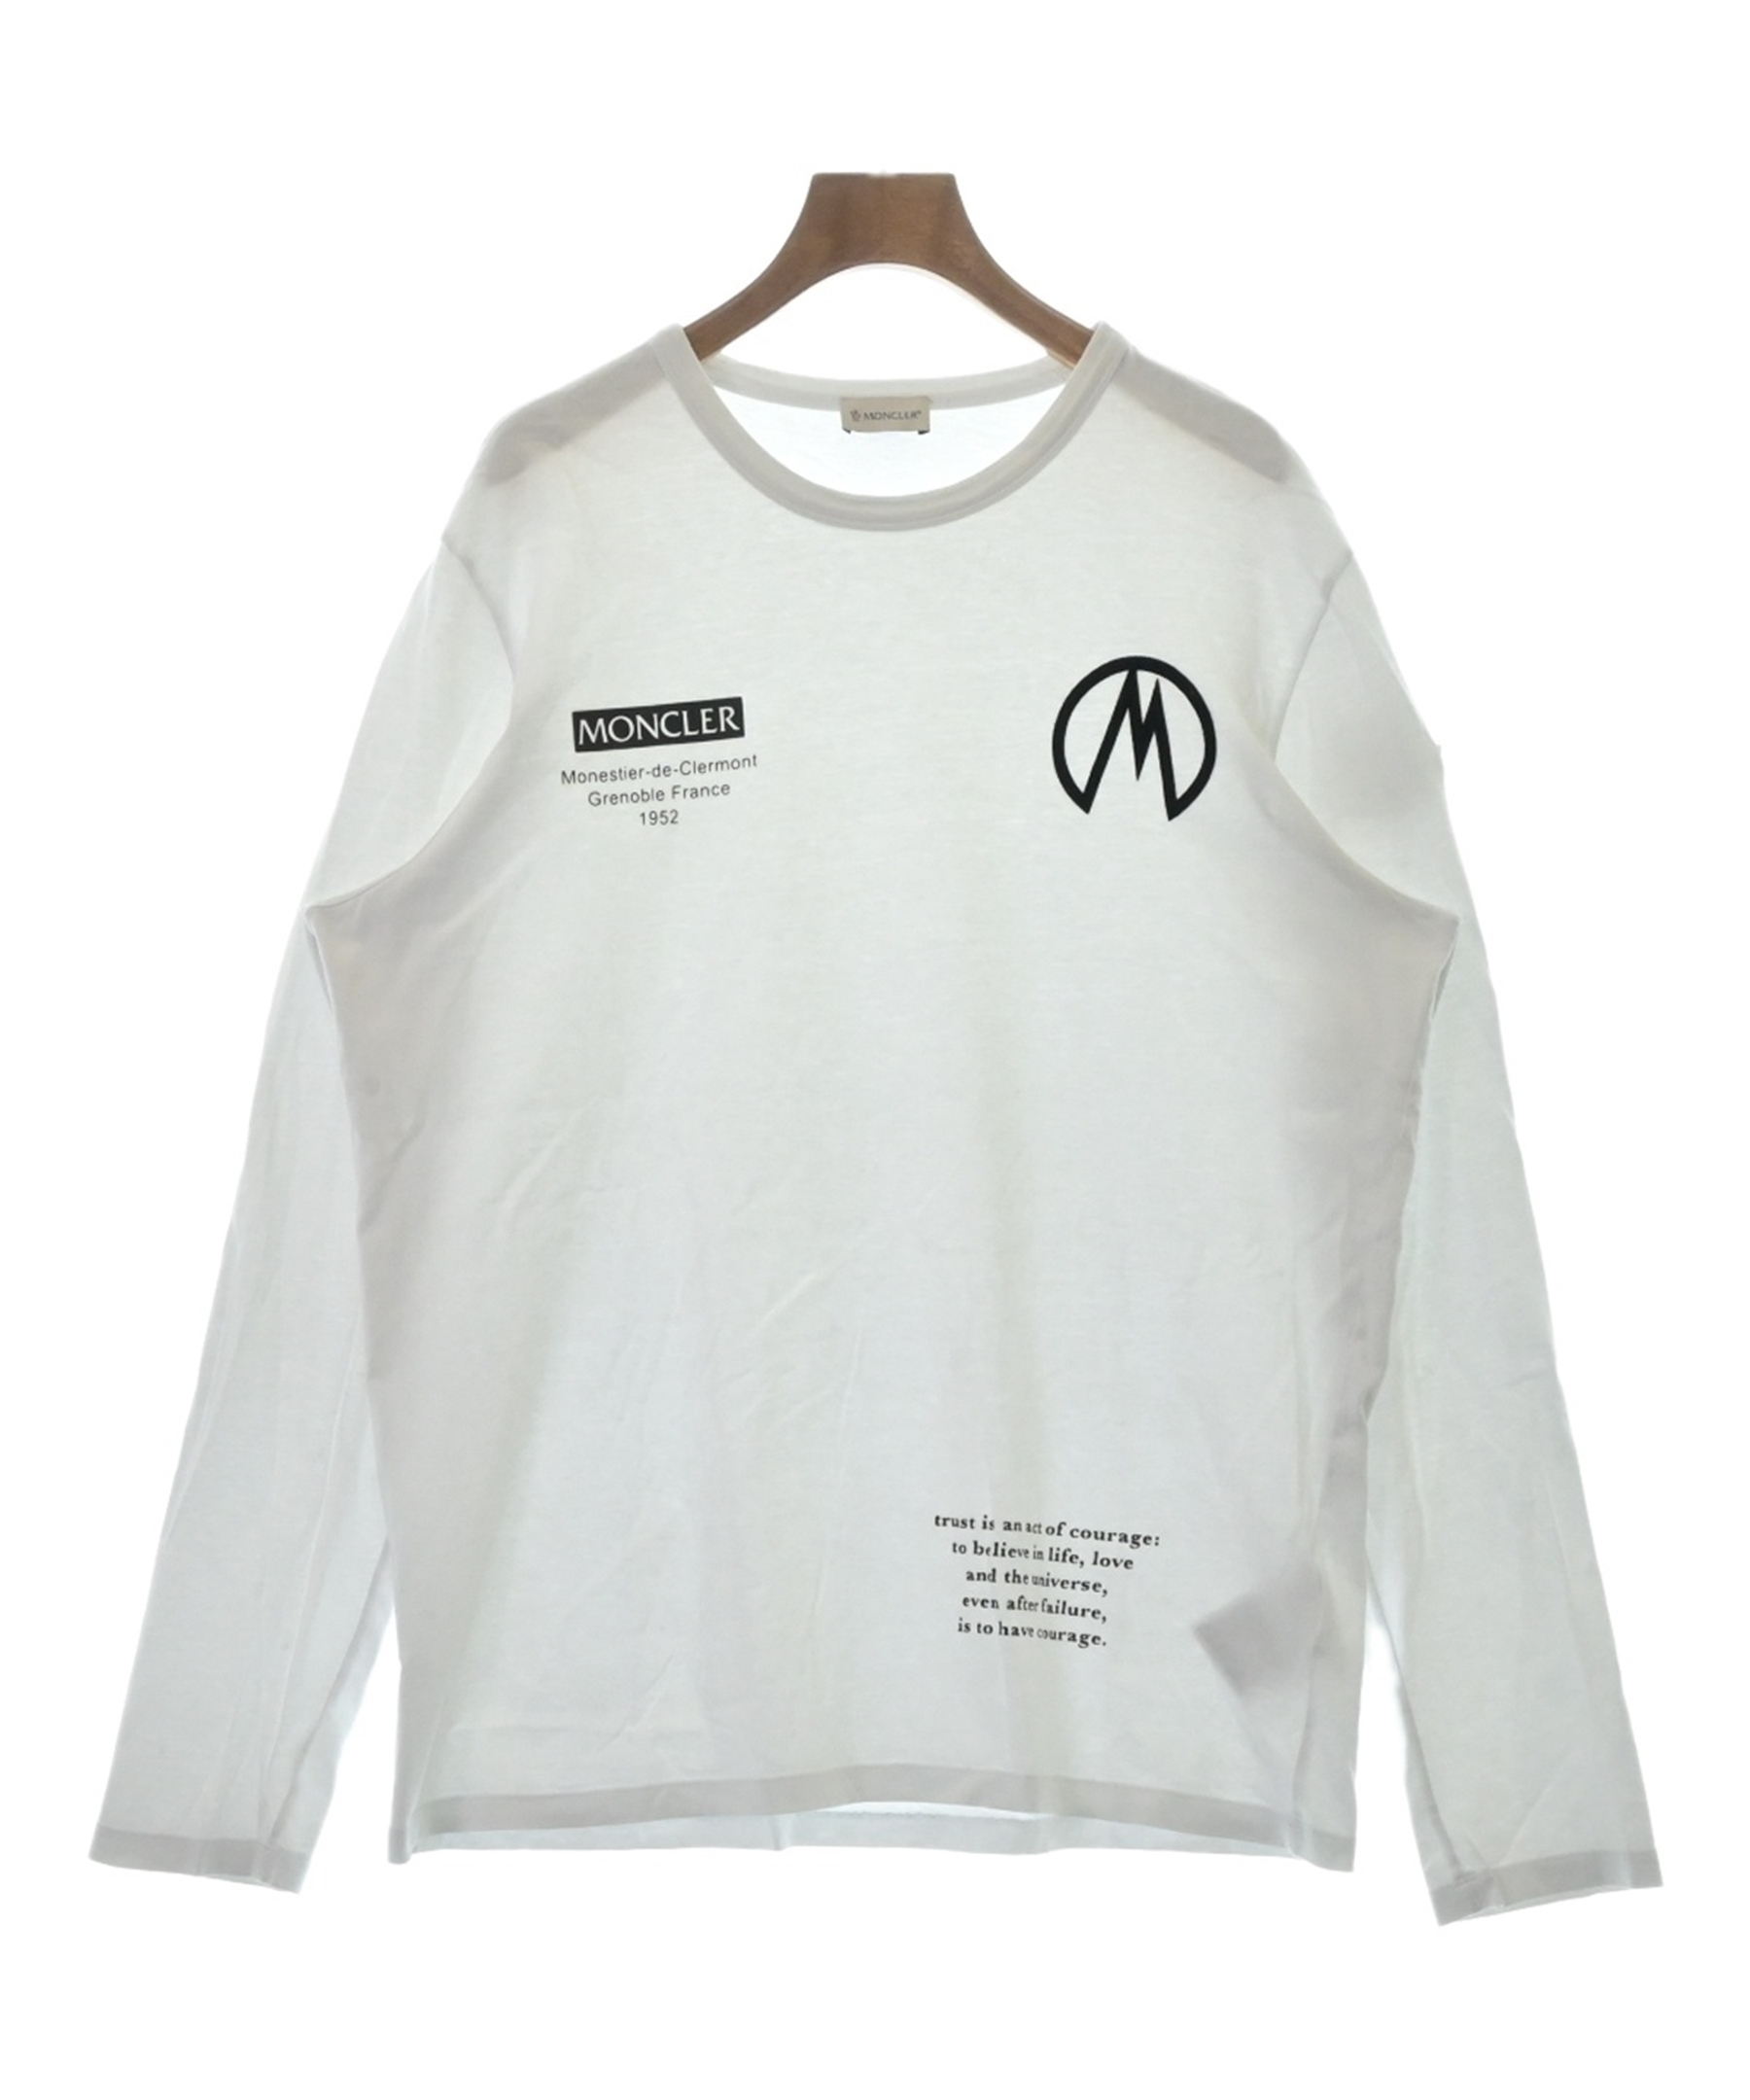 MONCLER（モンクレール）Tシャツ・カットソー 白 サイズ:XL メンズ 